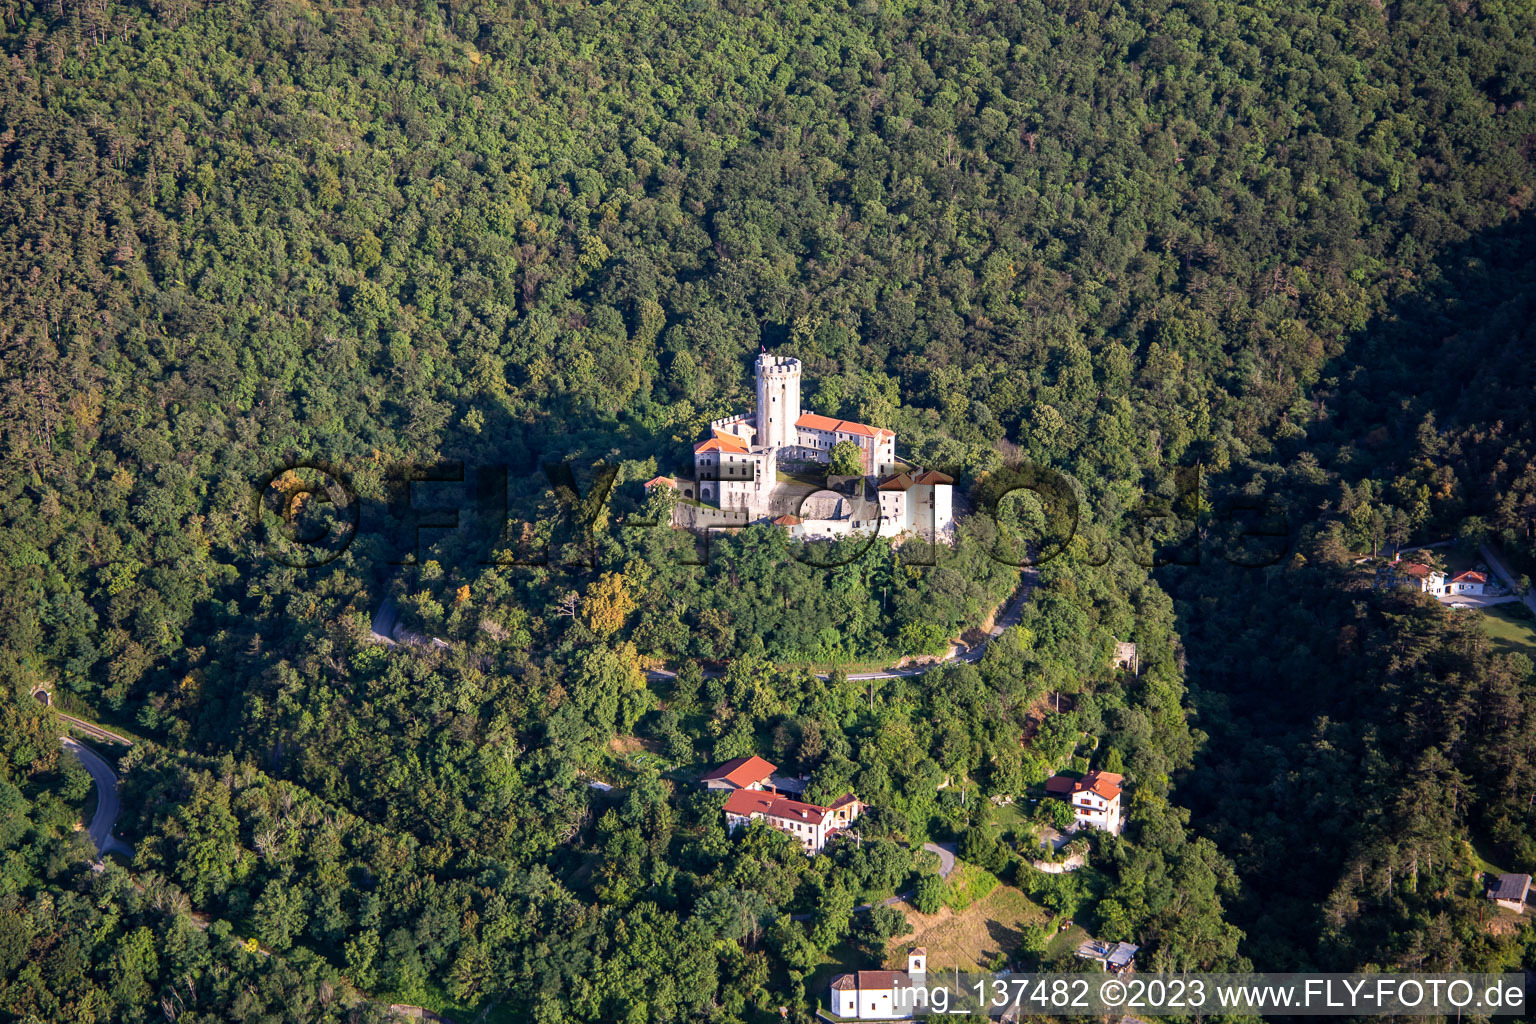 Luftbild von Burg / Grad Rihemberk im Ortsteil Branik in Nova Gorica, Slowenien